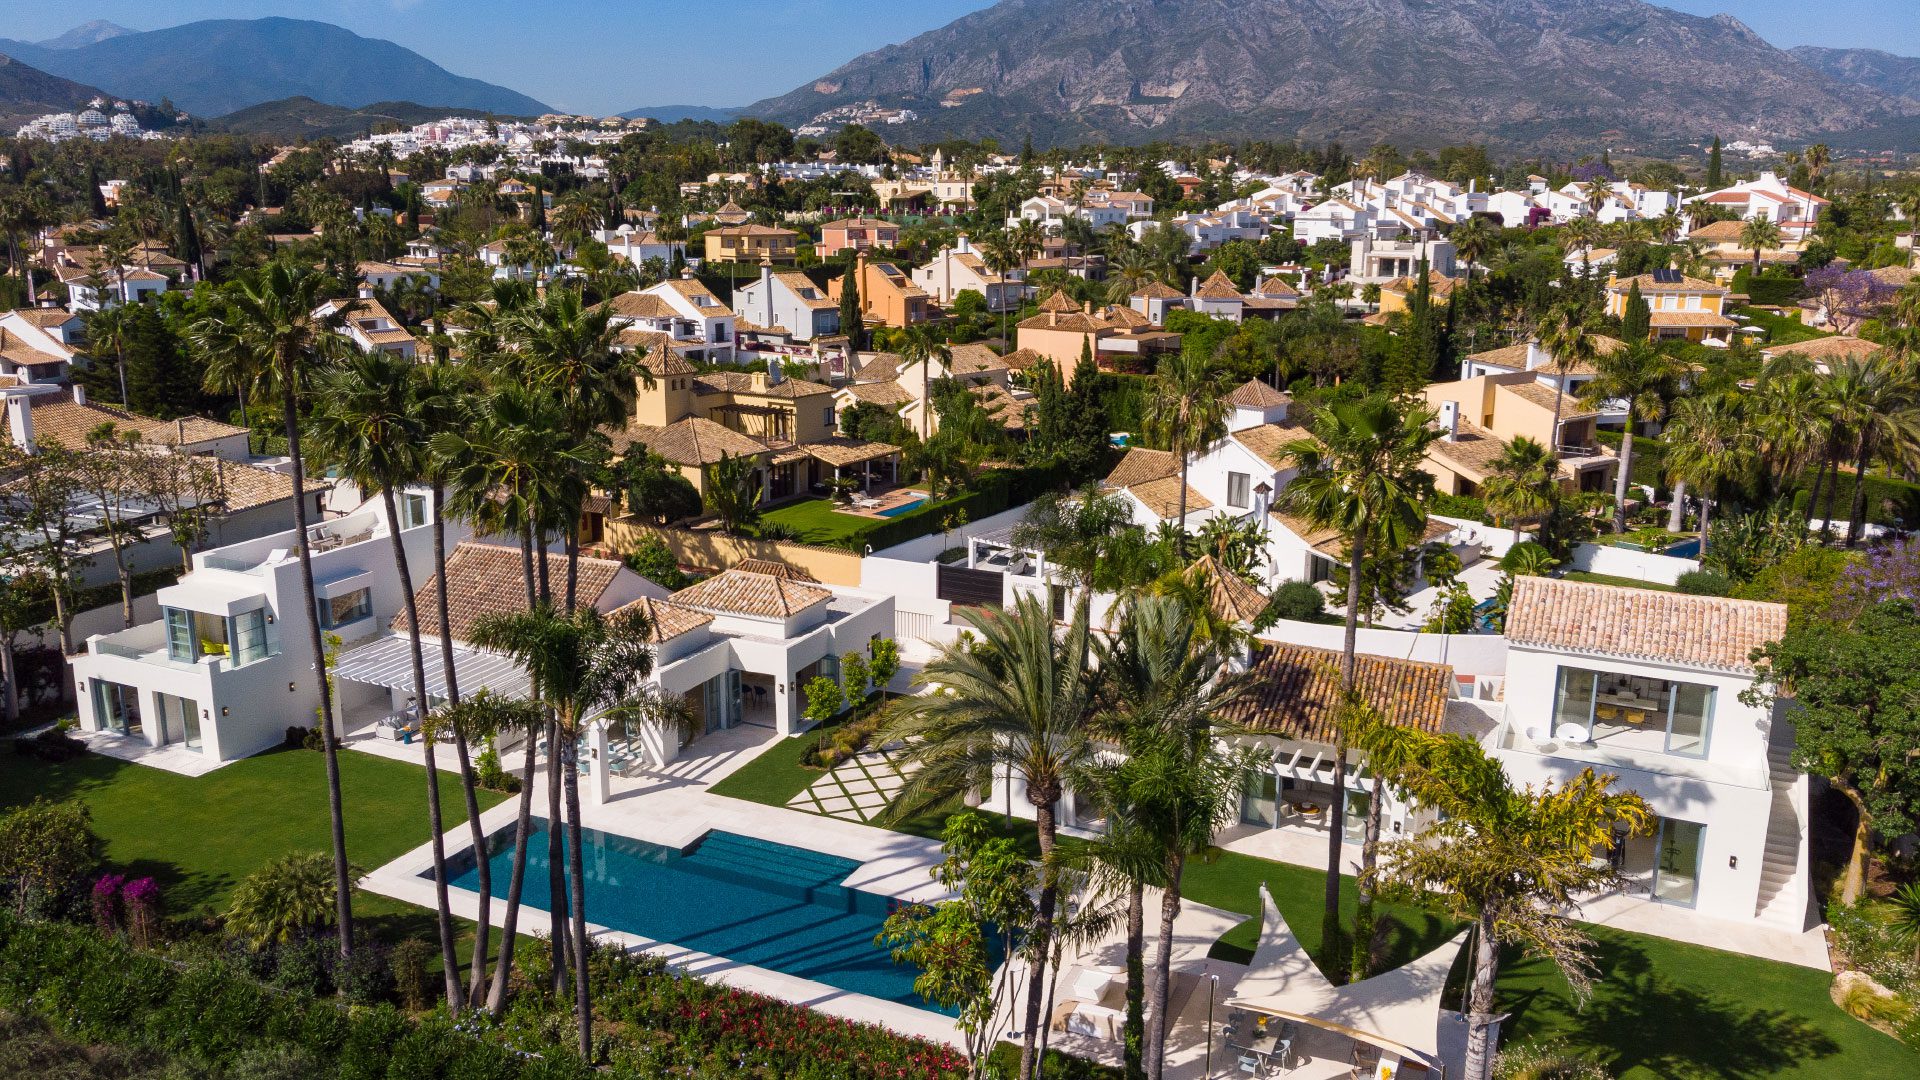 Villa Noera Marbella - Vue aérienne de jour de Marbella avec un focus sur la villa avec grande piscine